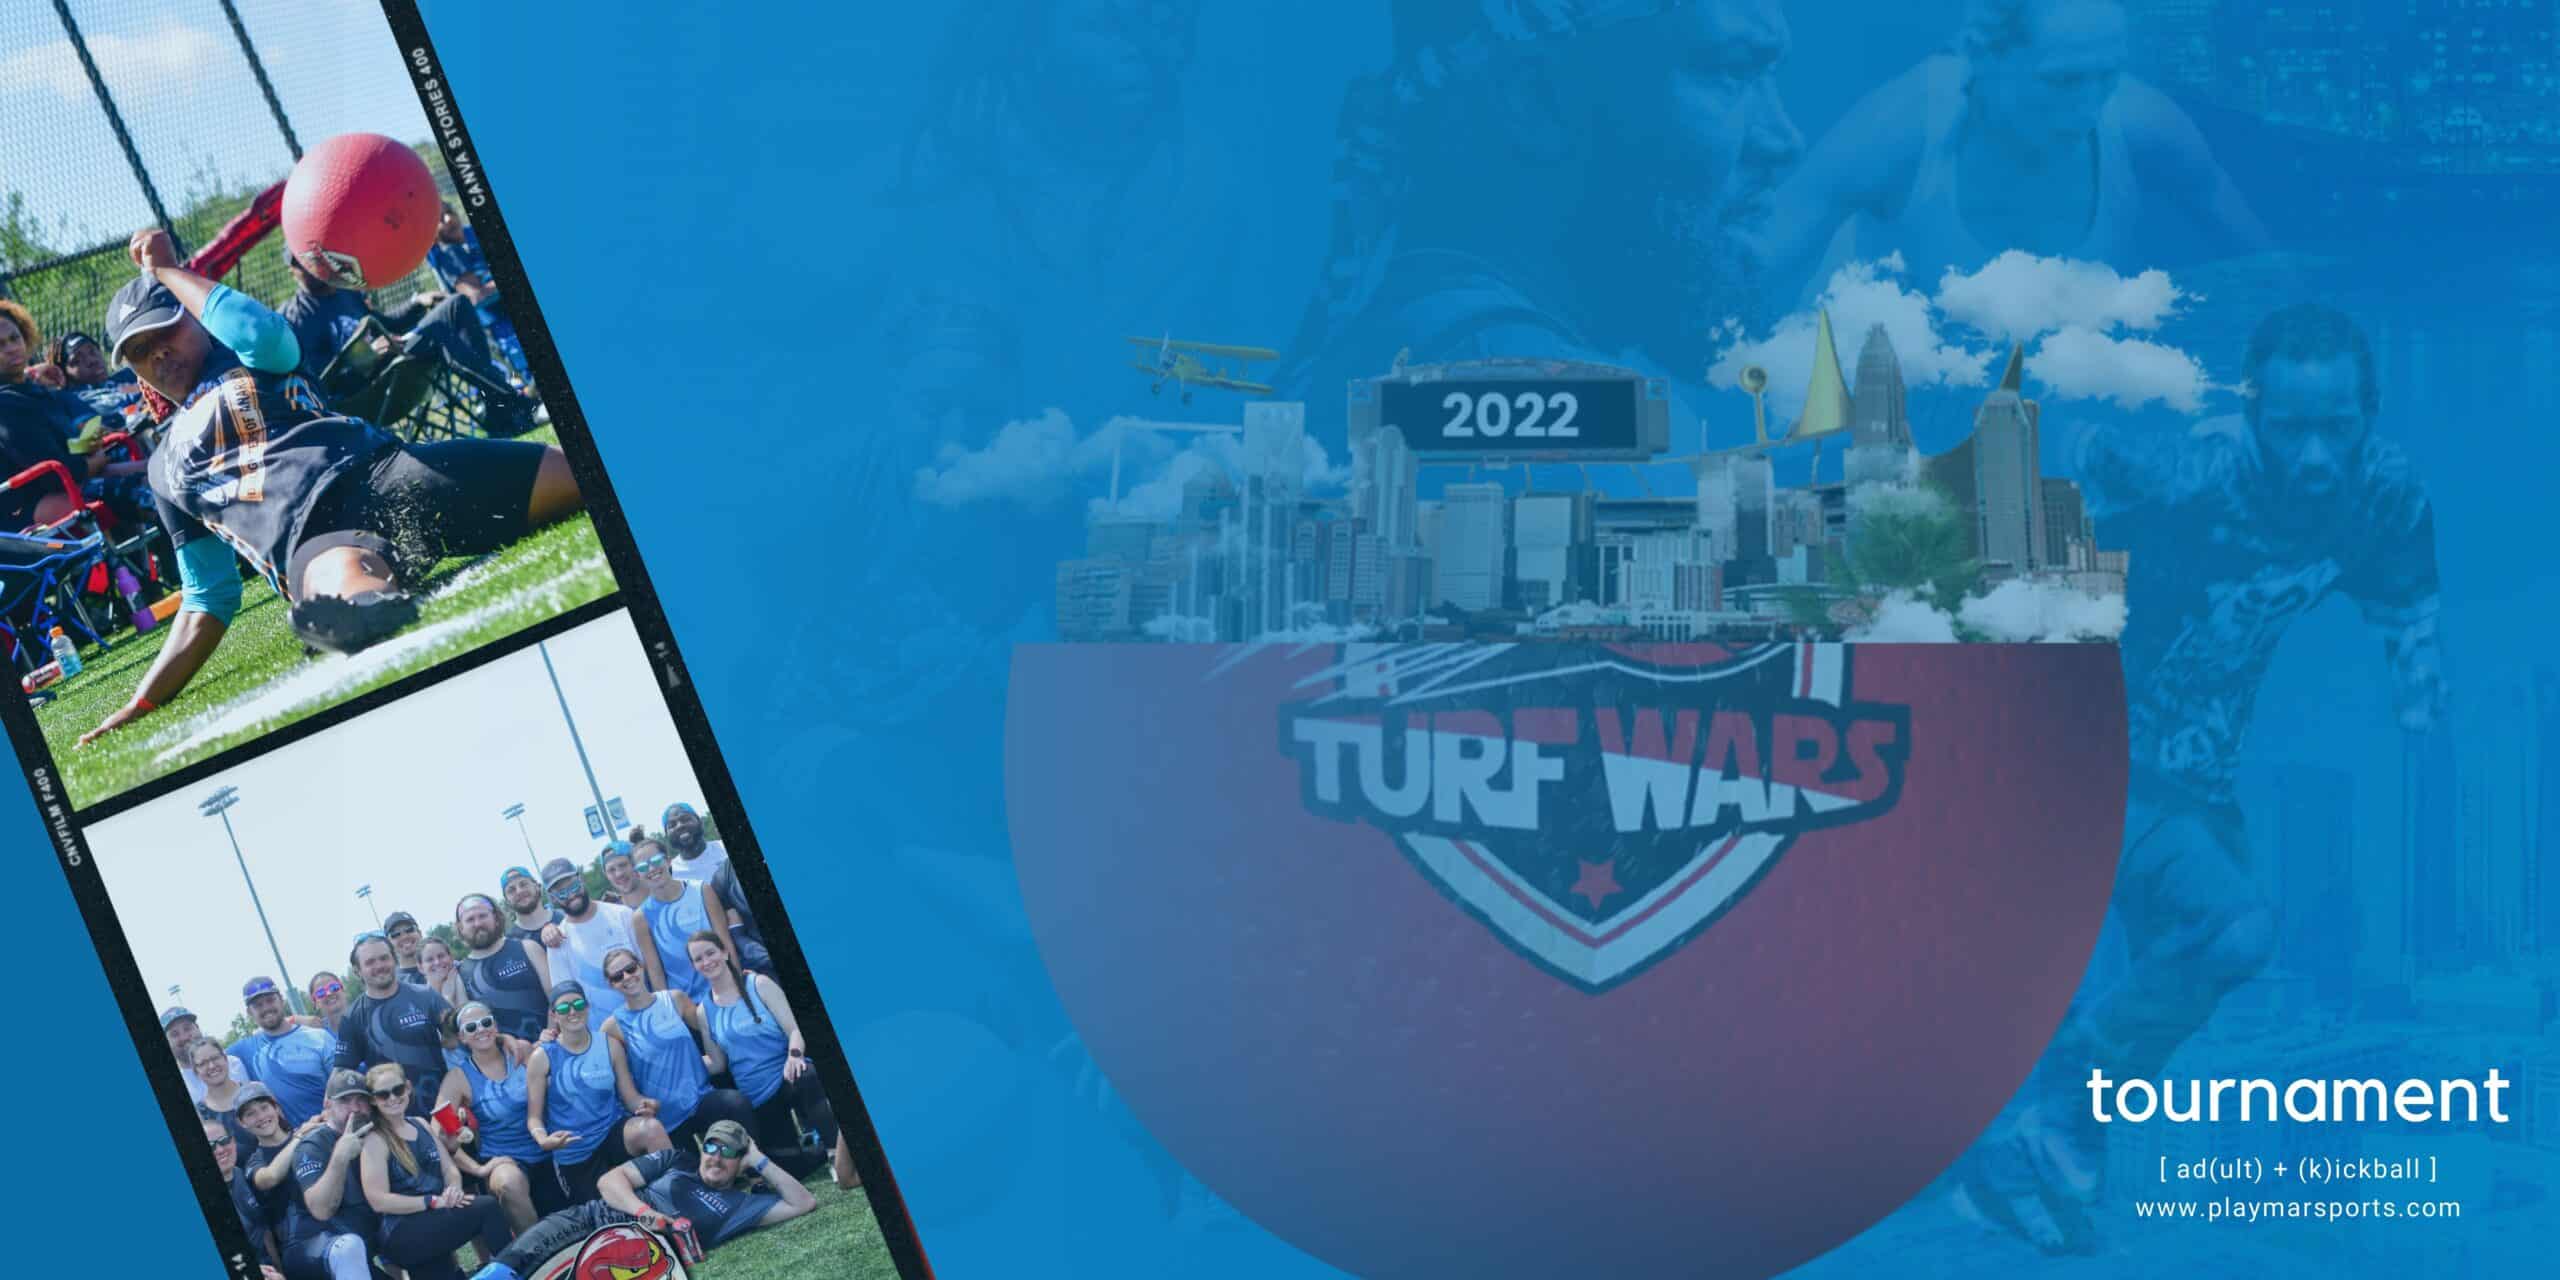 Turf Wars Kickball event logo